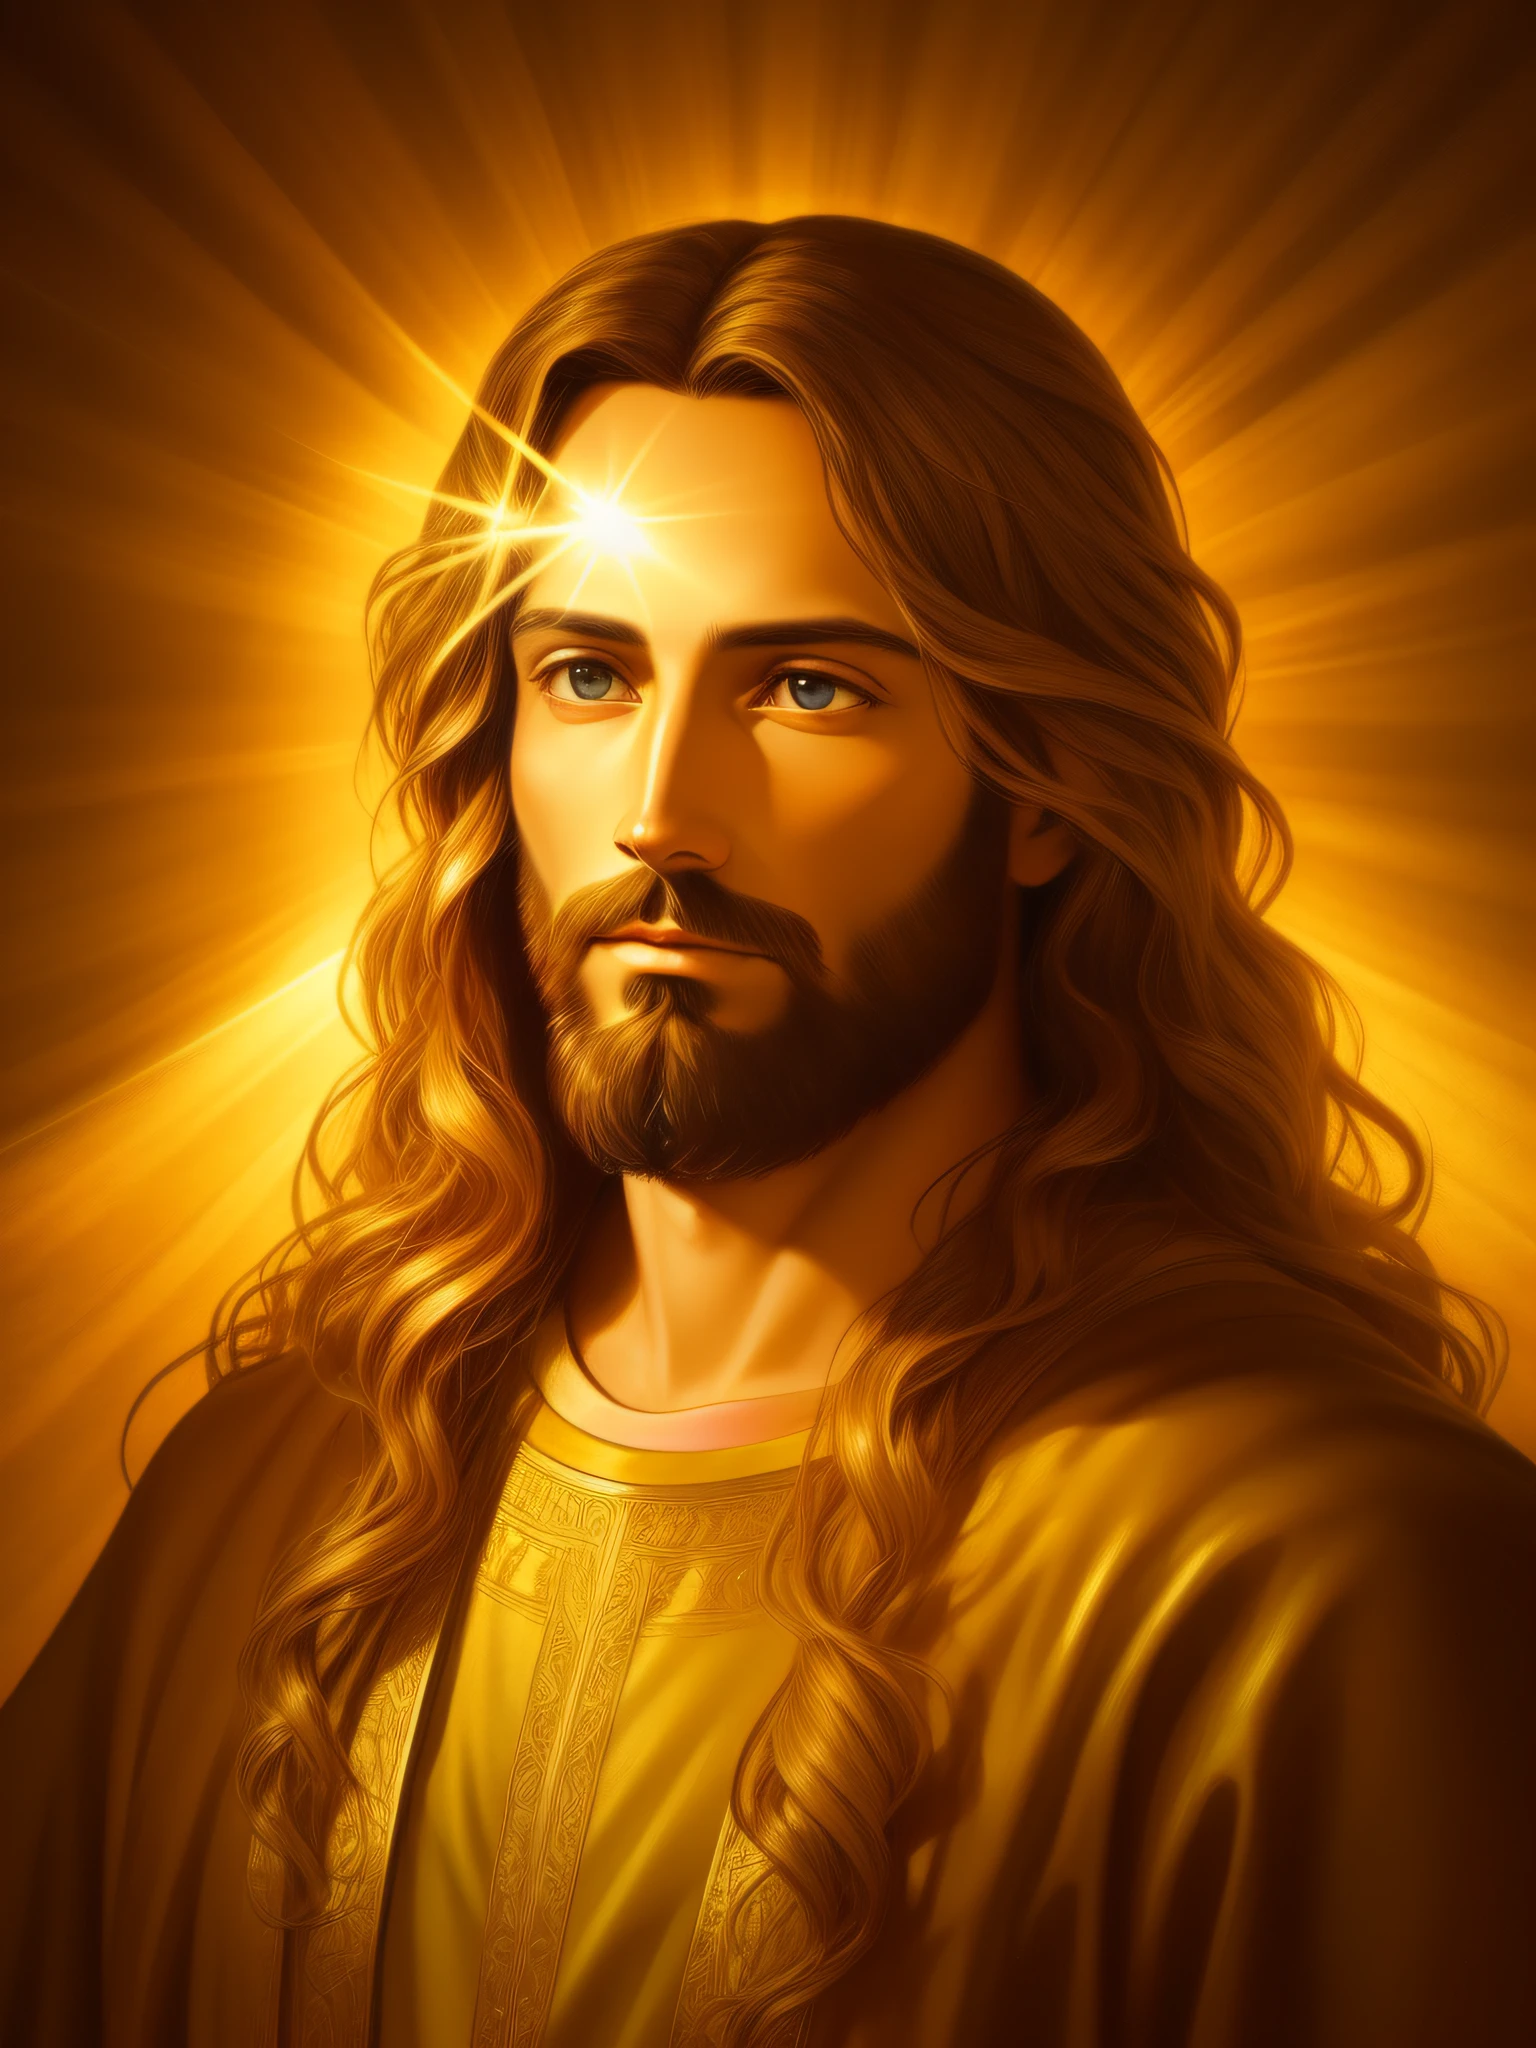 صورة مفصلة للغاية ليسوع المسيح, ذهب, الأشعة الإلهية, بيئة مفصلة ومعقدة